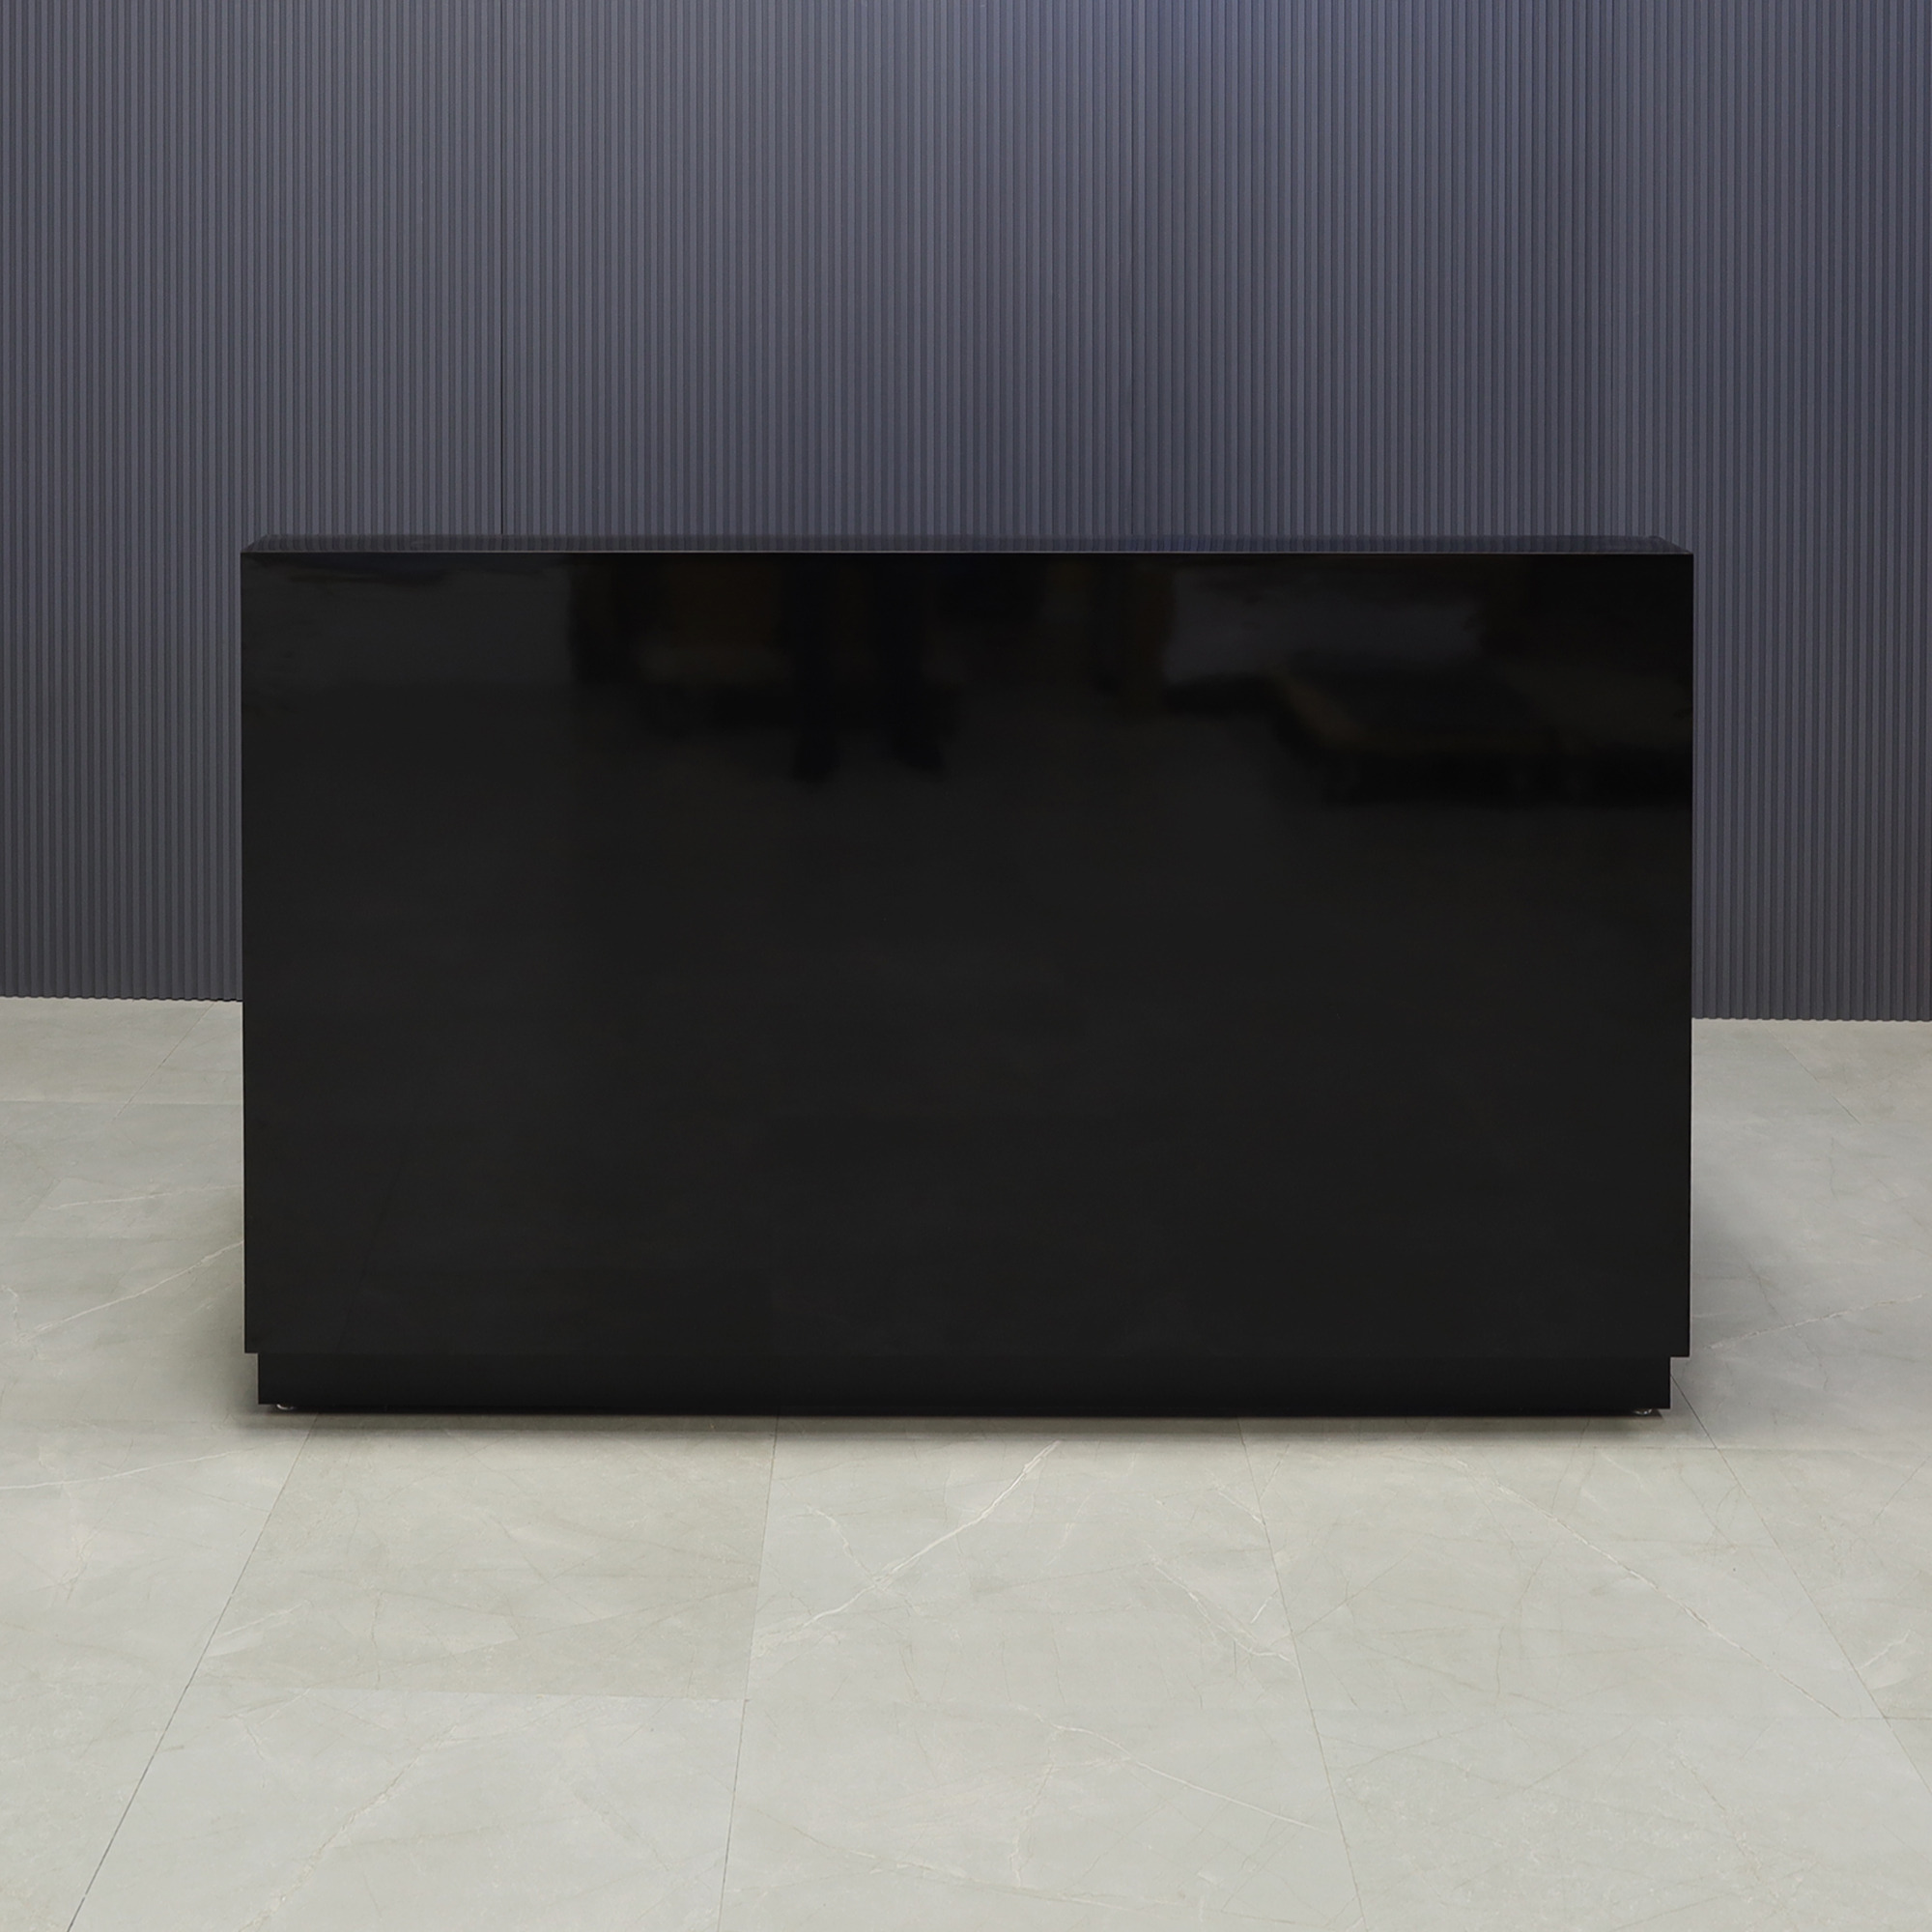 72-inch Dallas Straight Custom Reception Desk in black gloss laminate main desk and toe-kick, shown here.